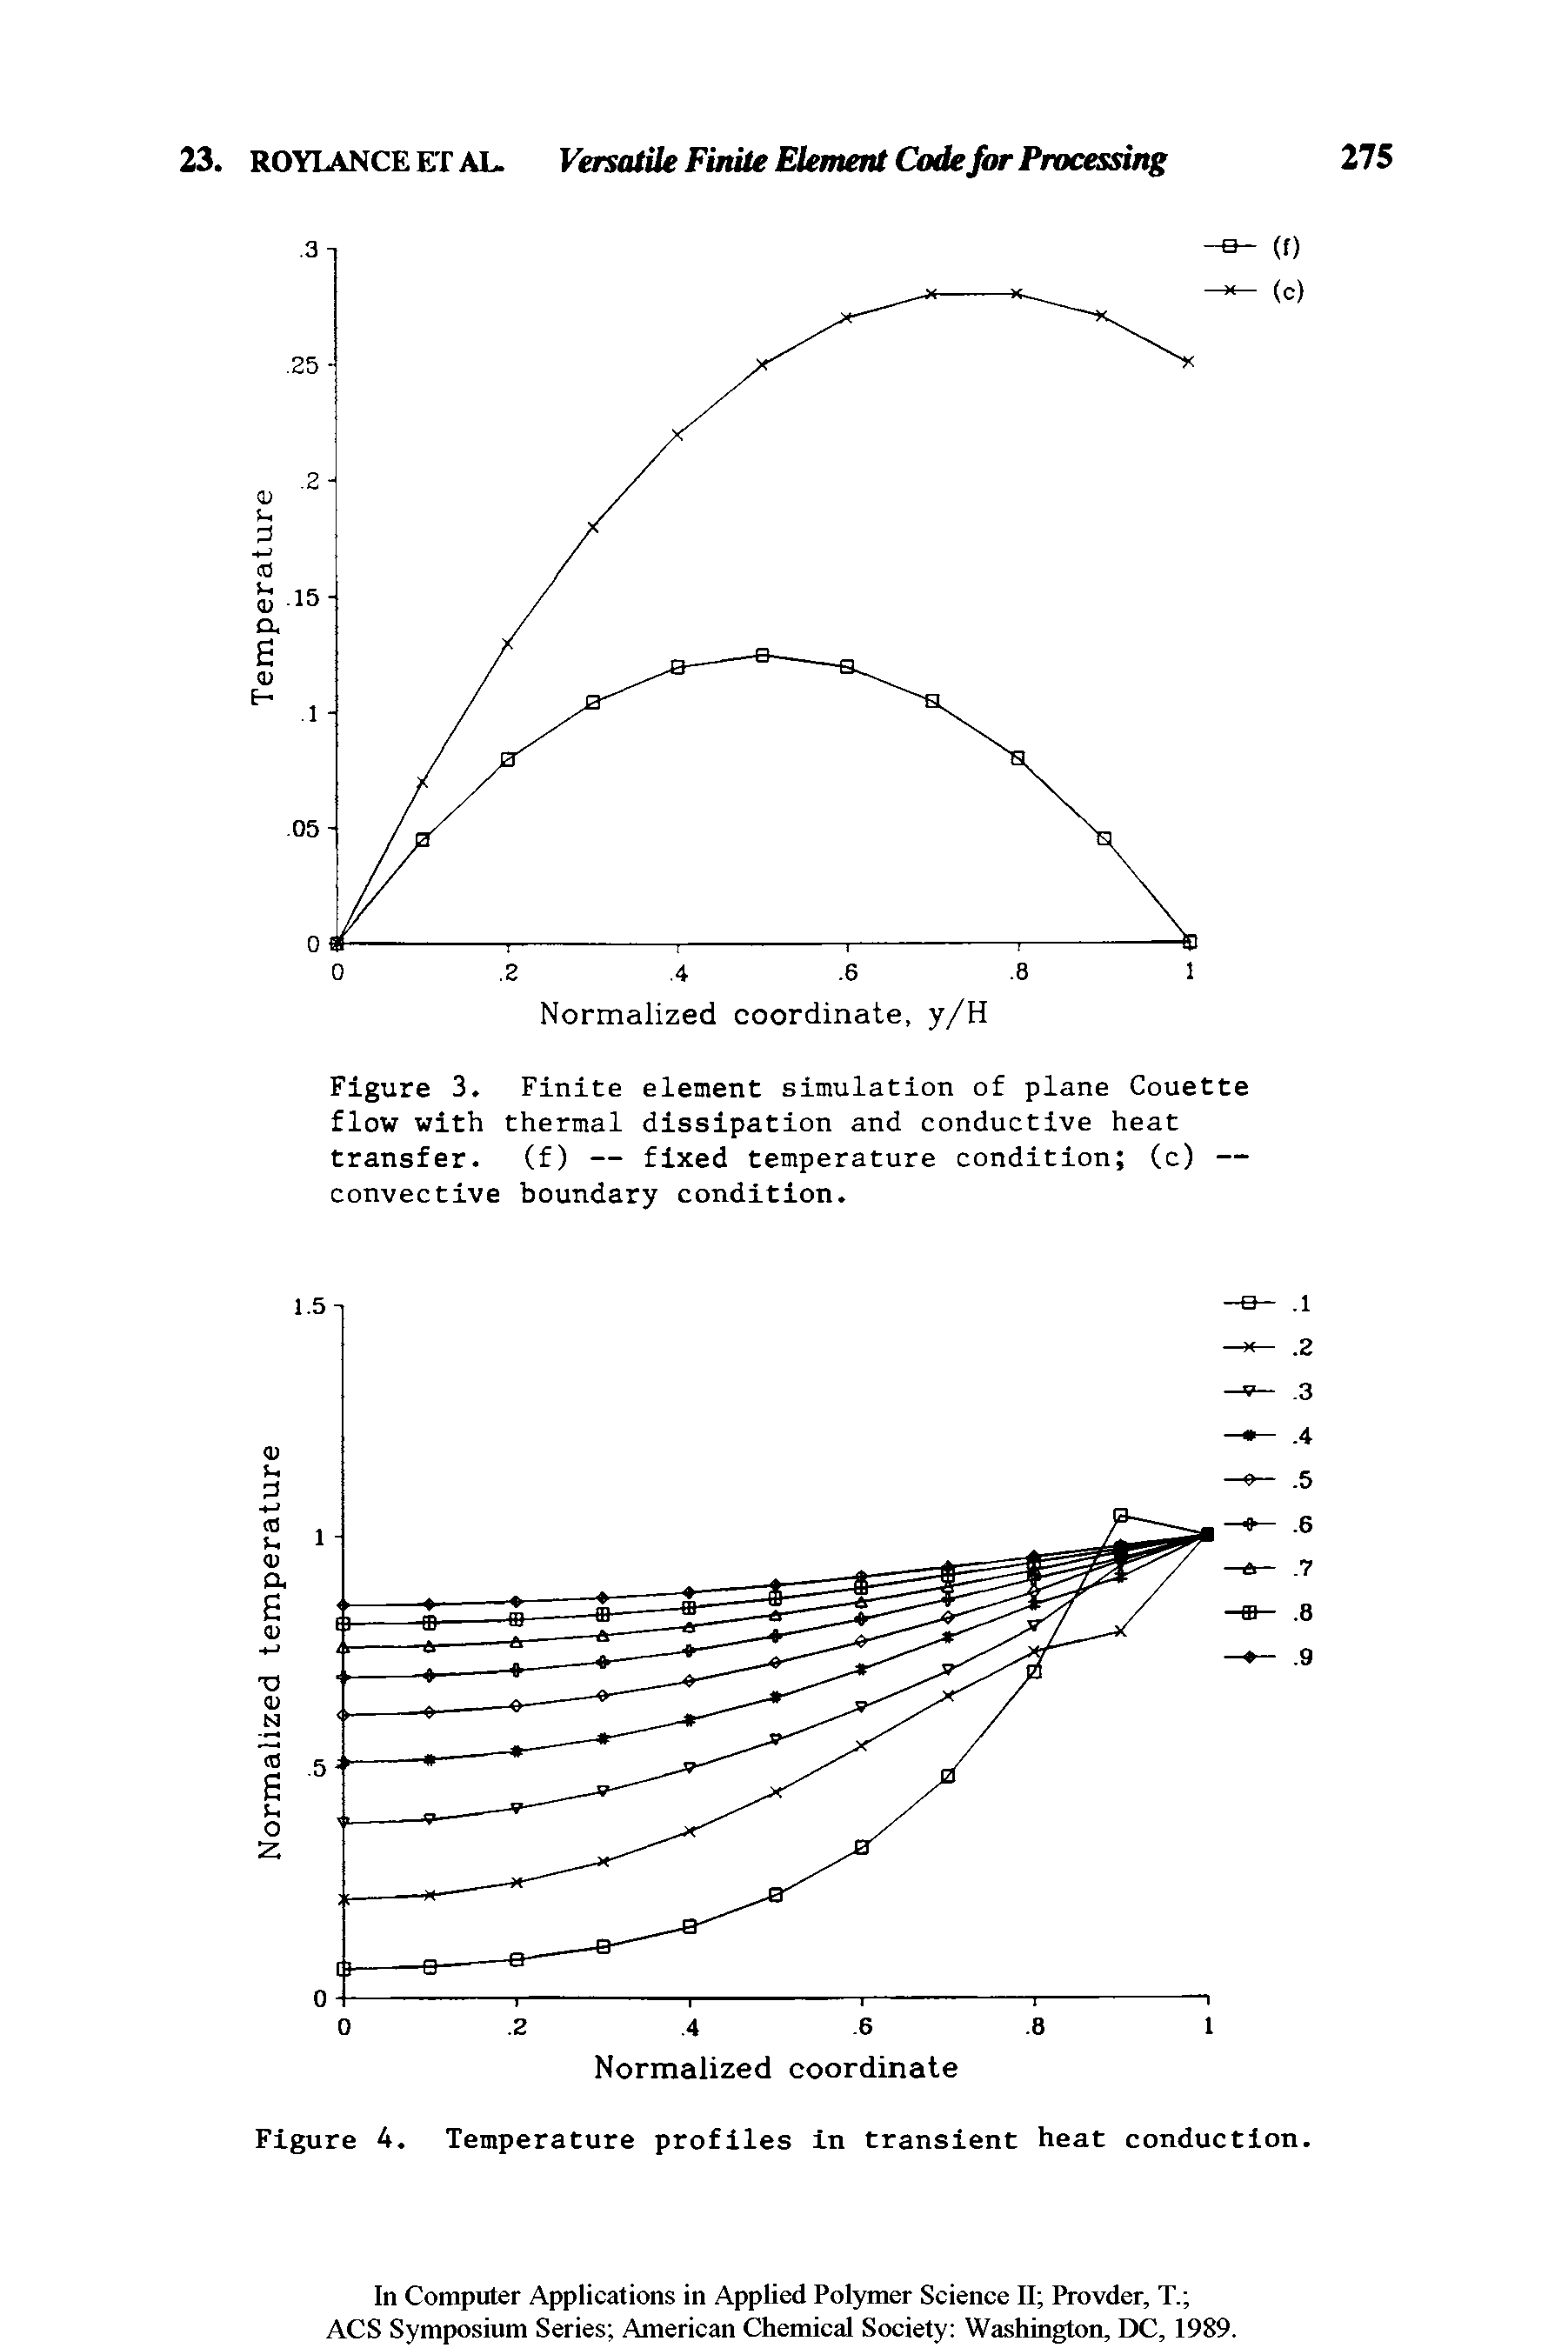 Figure 4. Temperature profiles in transient heat conduction.